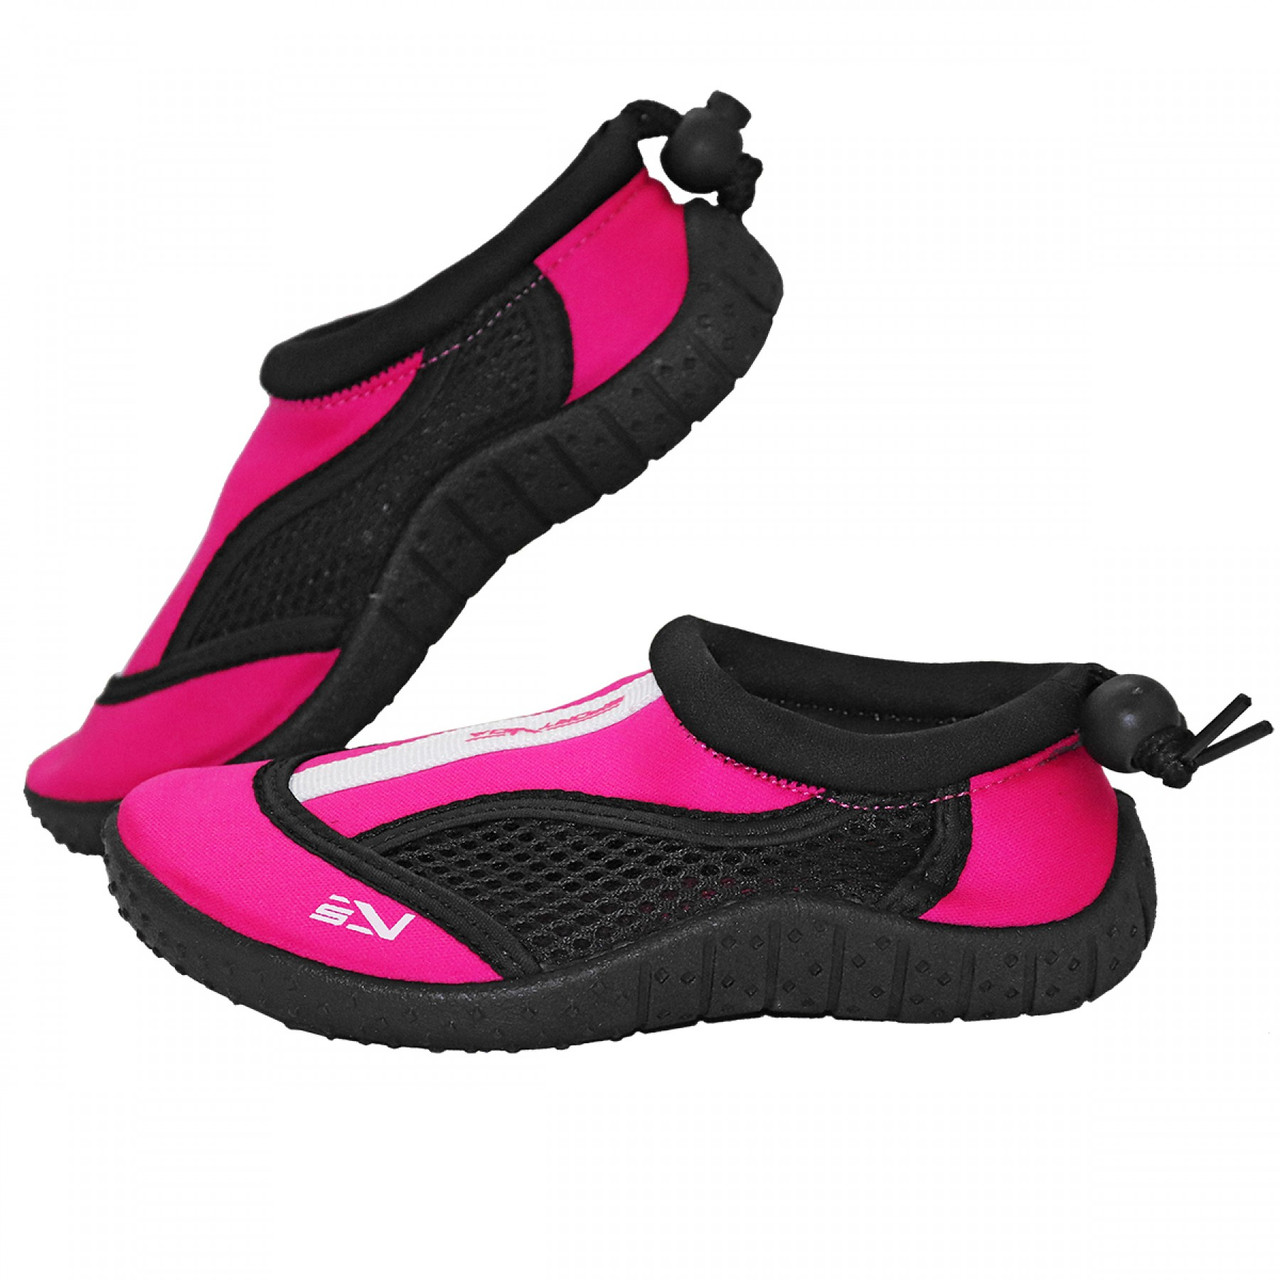 Взуття для пляжу та коралів (аквашузи) SportVida SV-GY0001-R33 Size 33 Black/Pink